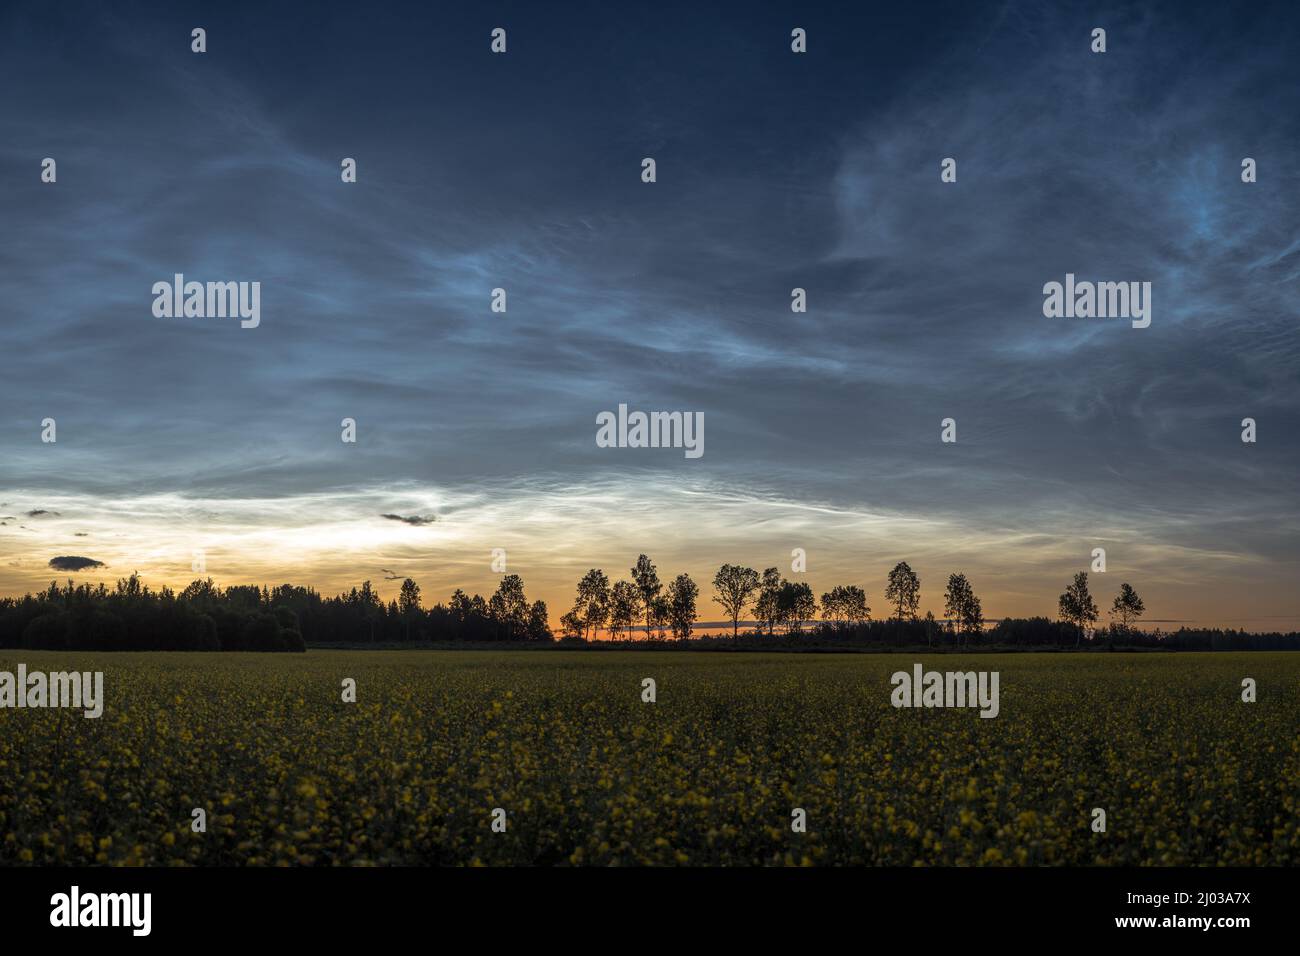 Noche de verano con cielo lleno de nubes noctilucentes Foto de stock